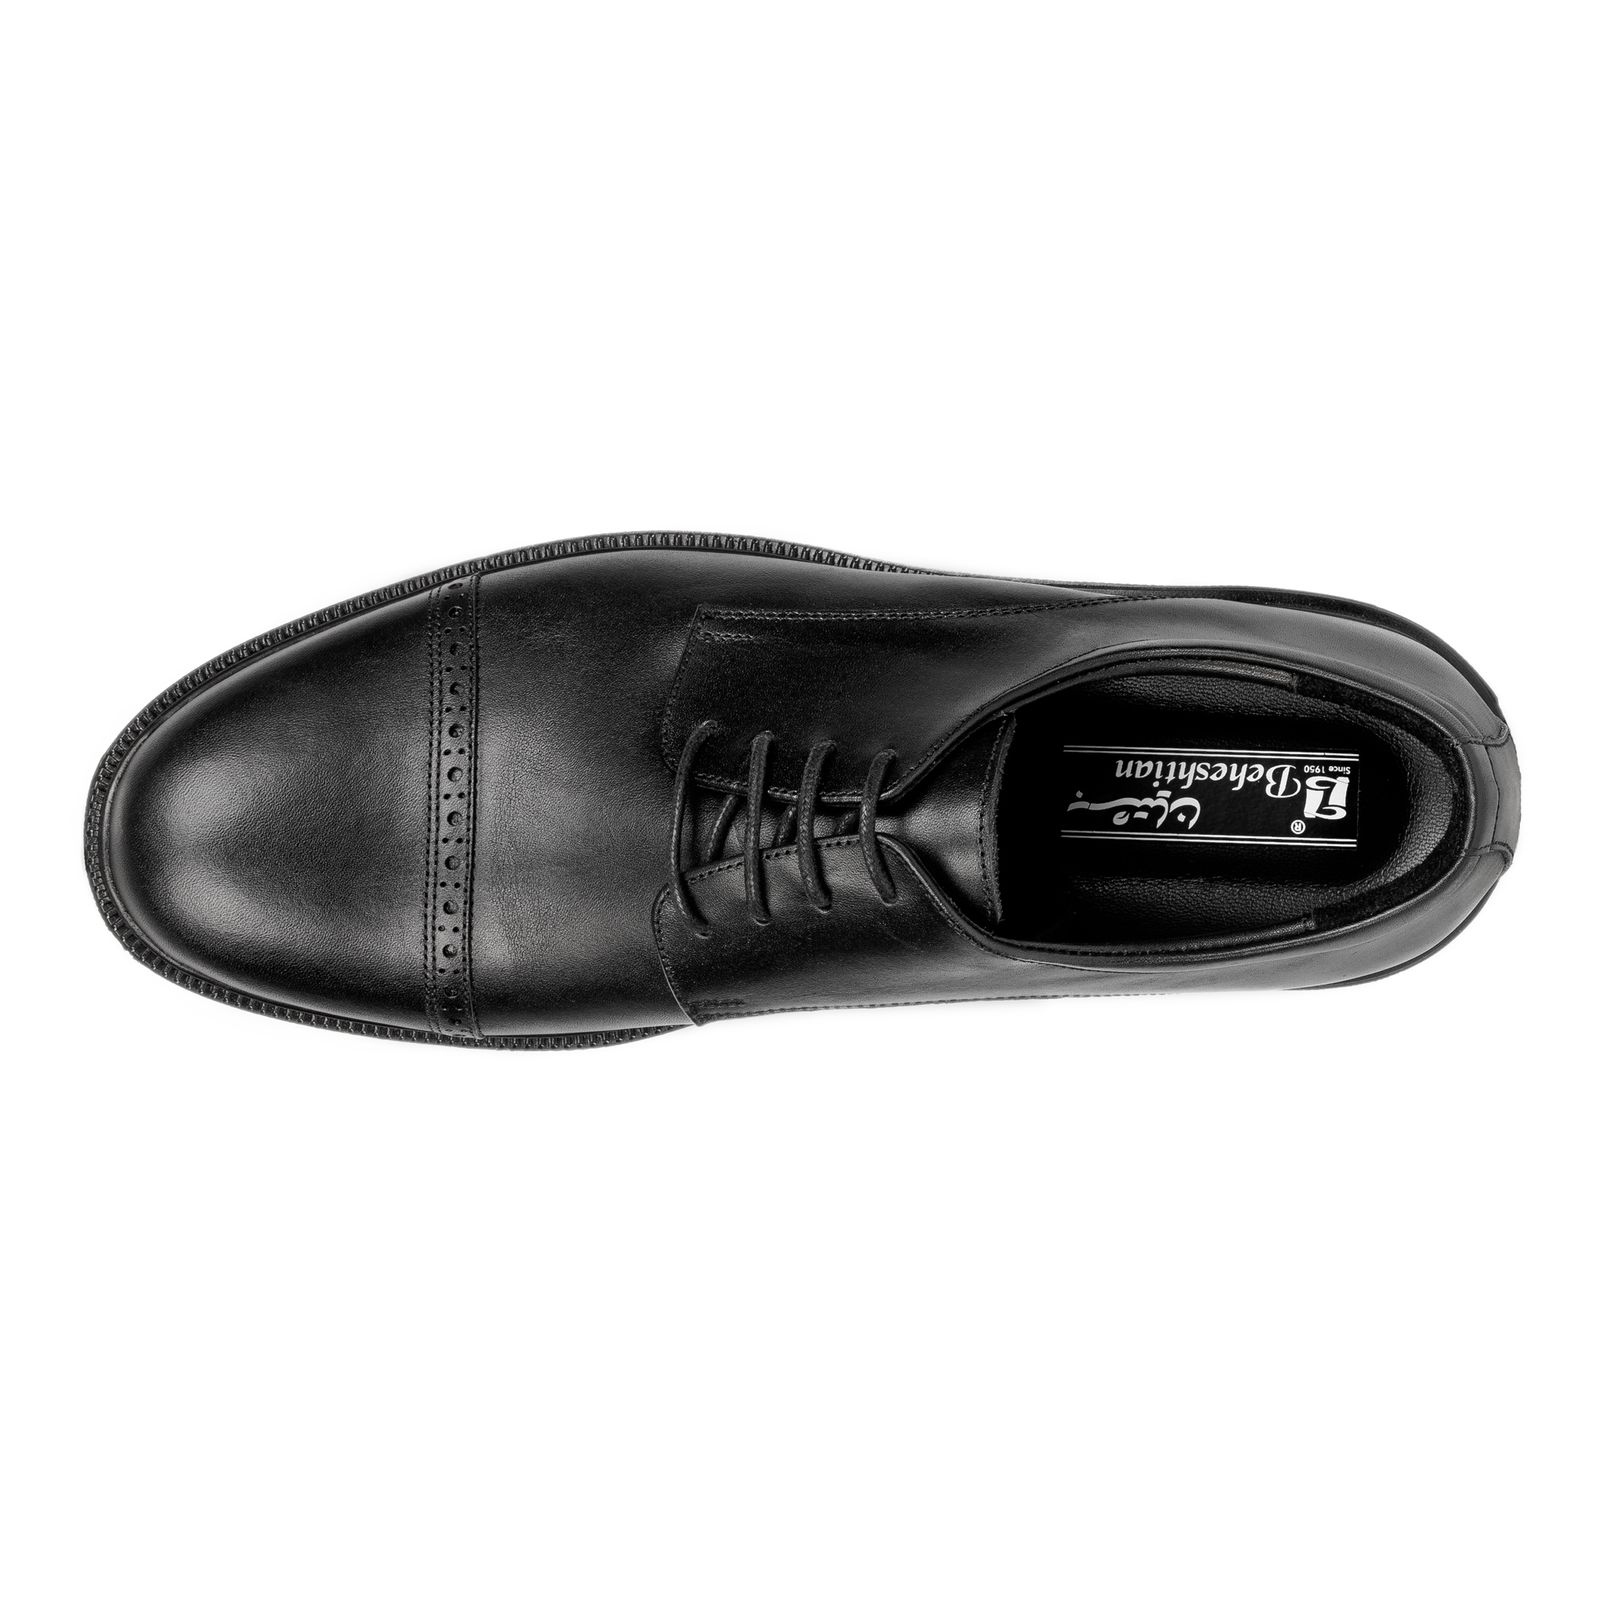 کفش مردانه بهشتیان مدل تورال 23710 -  - 4